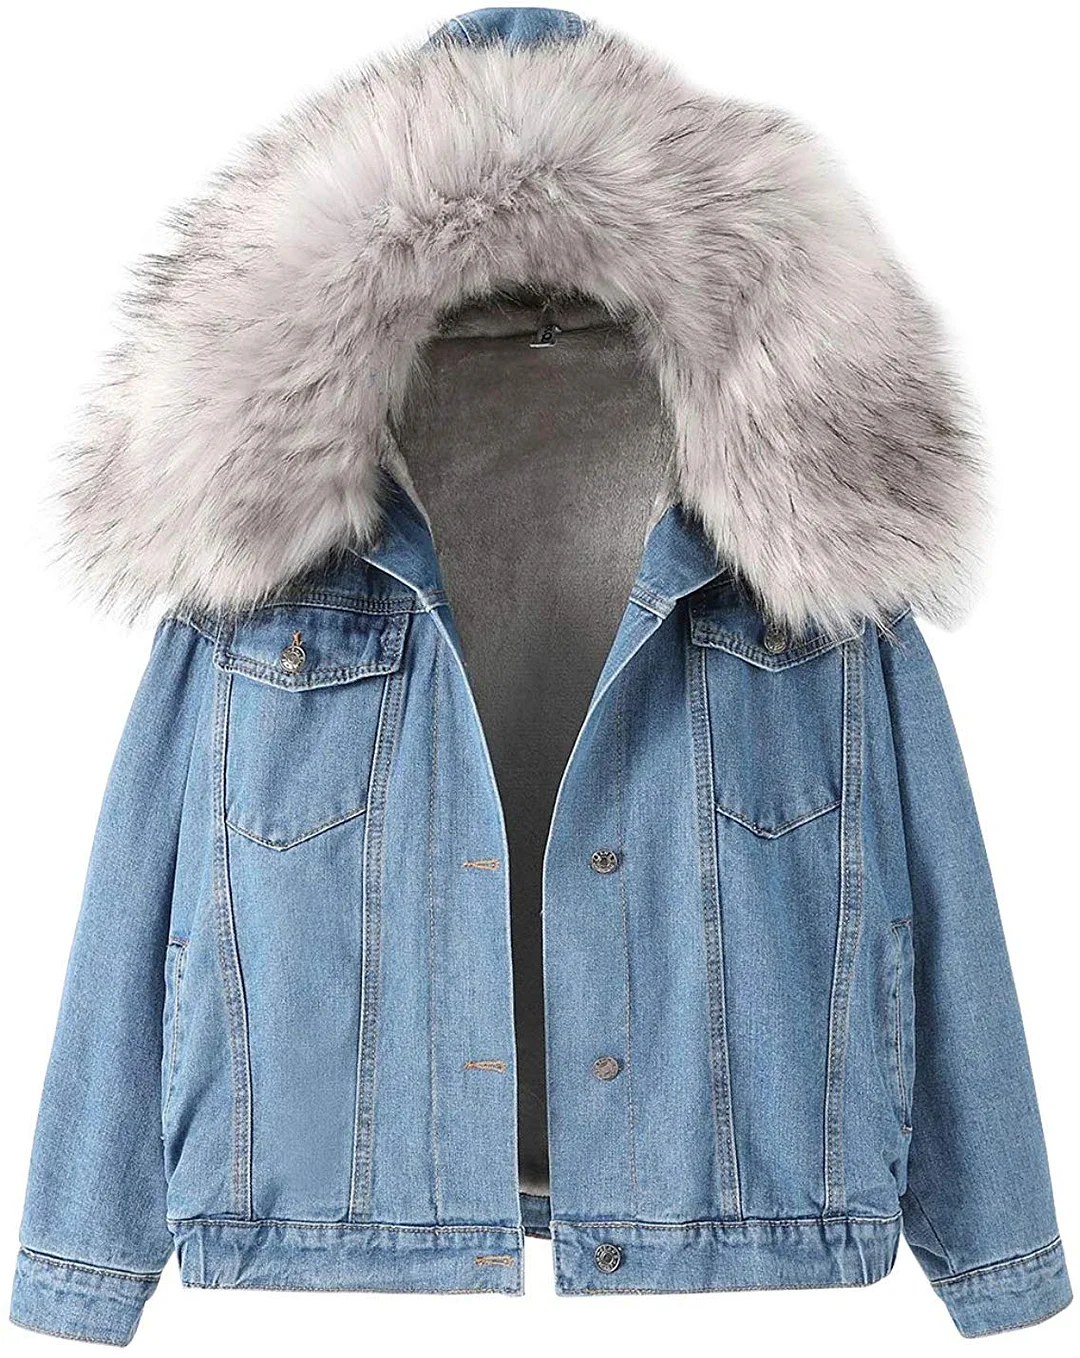 Women's Sherpa Fleece Lined Denim Jacket with Furry Fur Trim Hood